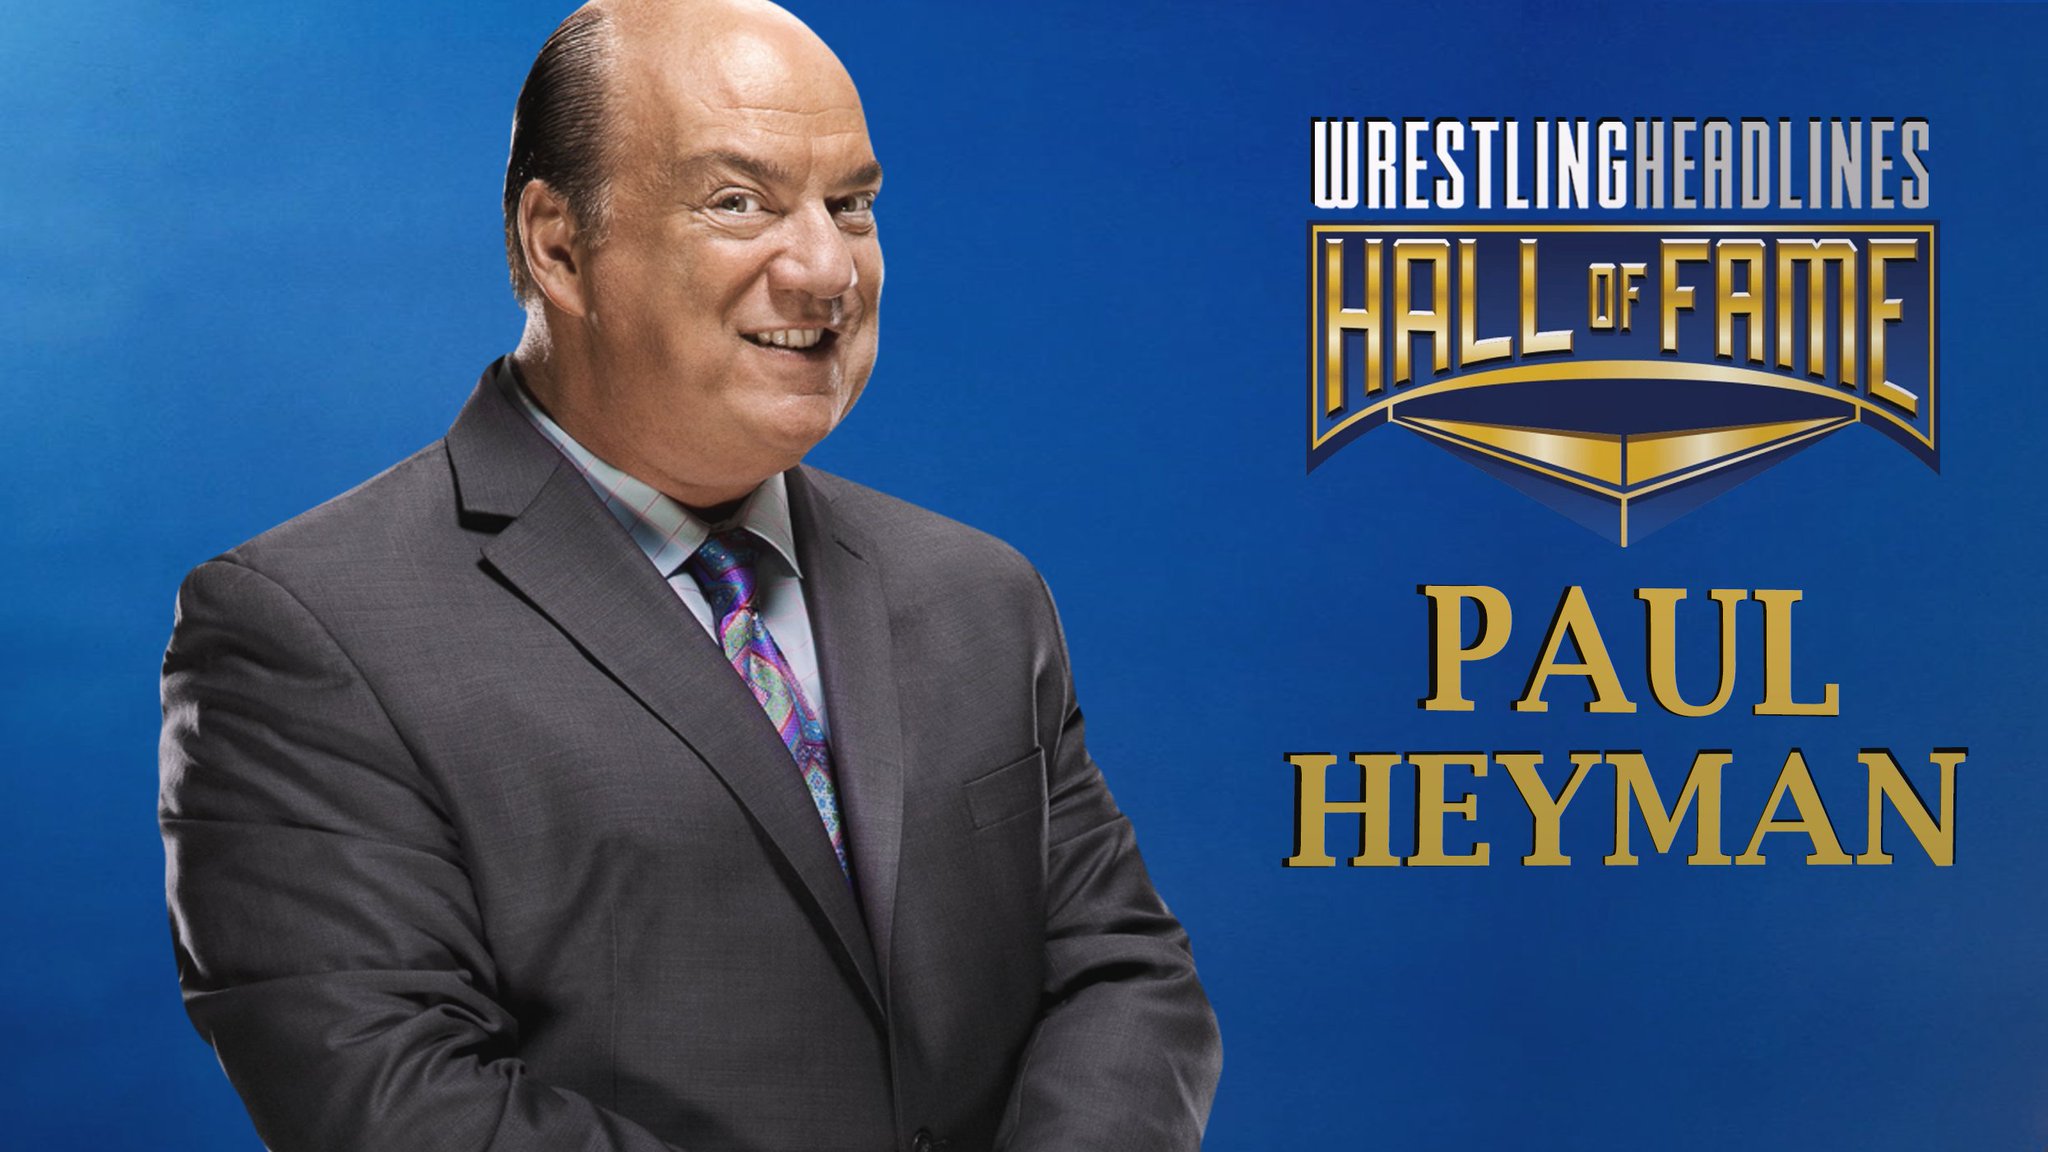 Behind the Scenes with WWE Legends: Paul Heyman's Memorable WrestleMania Weekend